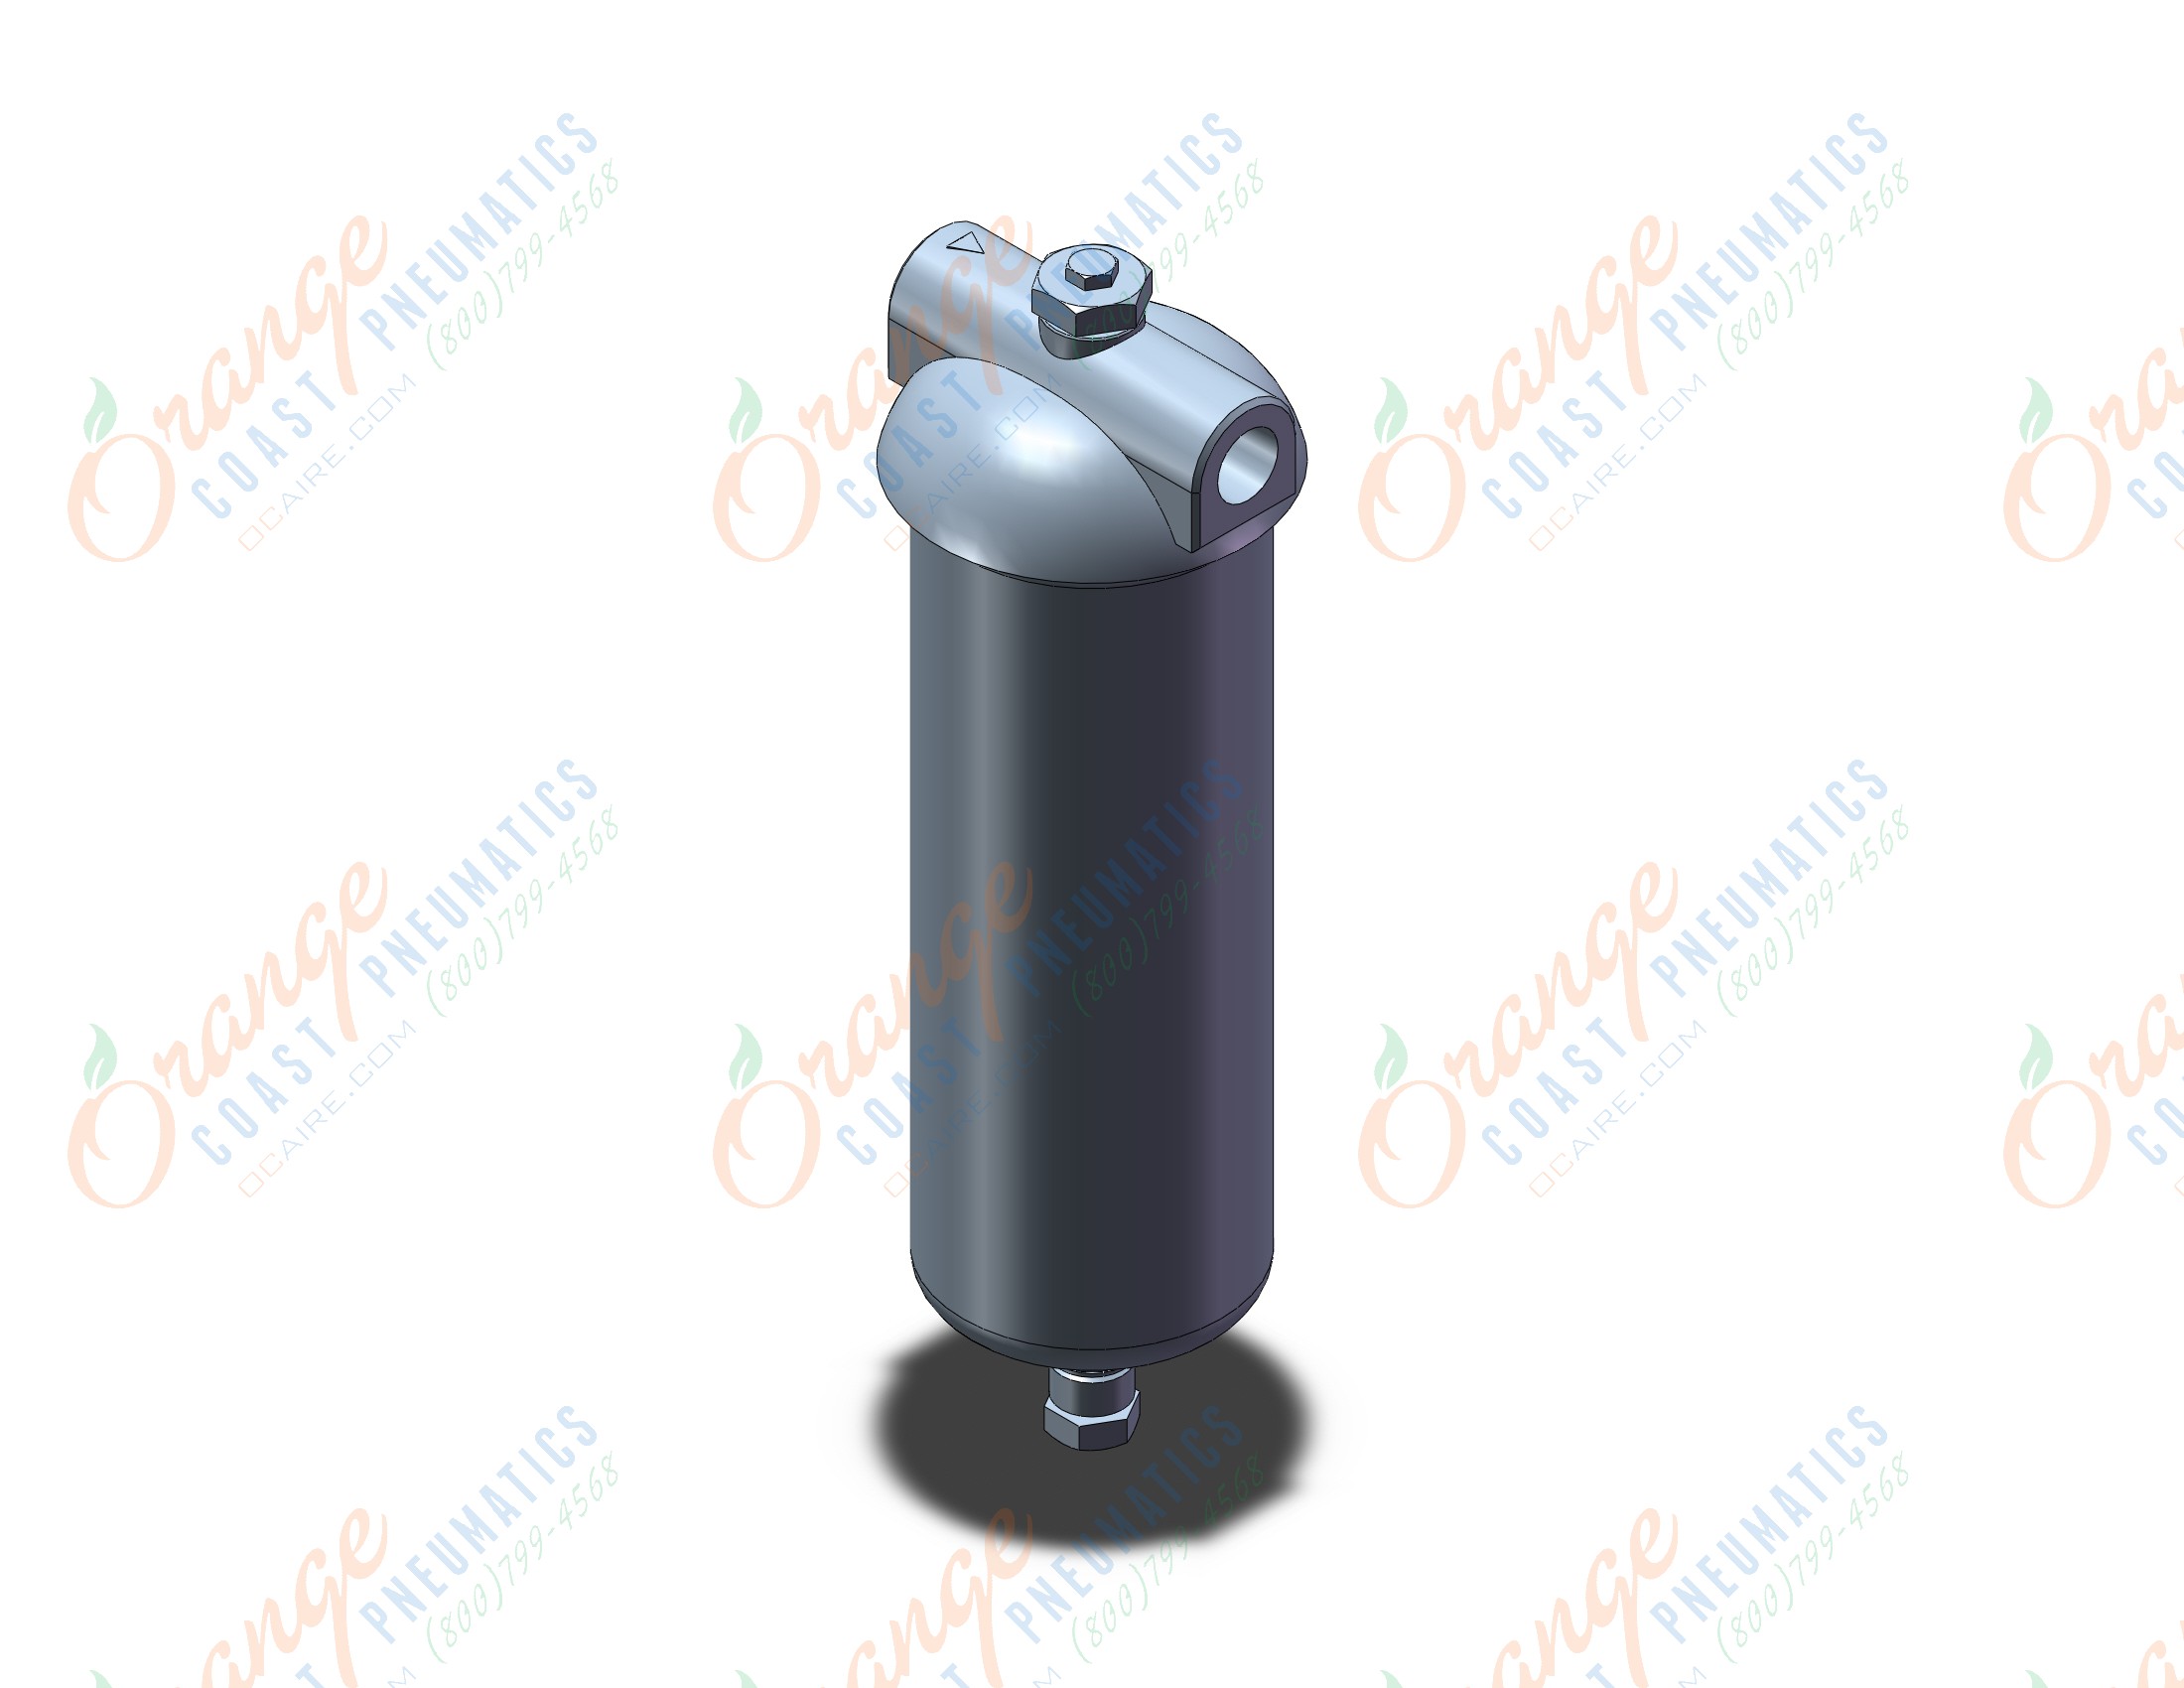 SMC FGDTA-04-HX50 industrial filter, INDUSTRIAL FILTER